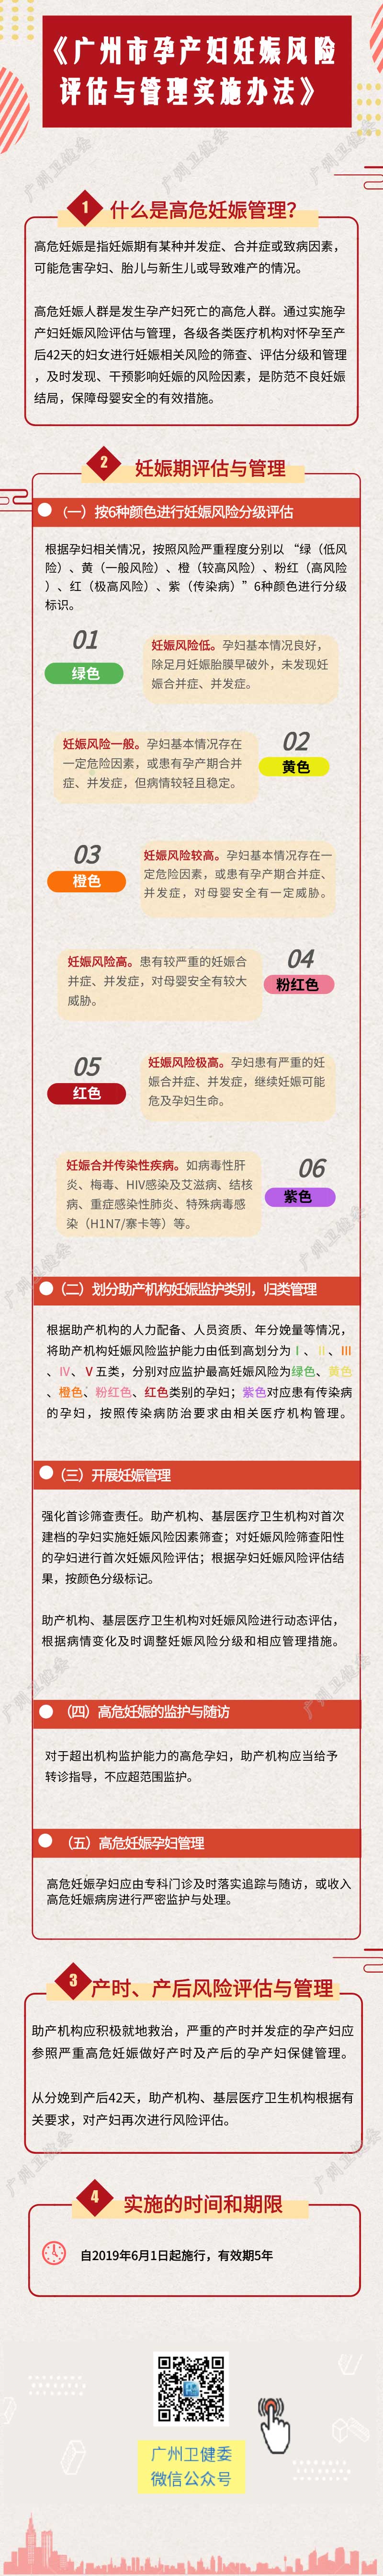 一图读懂《广州市孕产妇妊娠风险评估与管理实施办法》